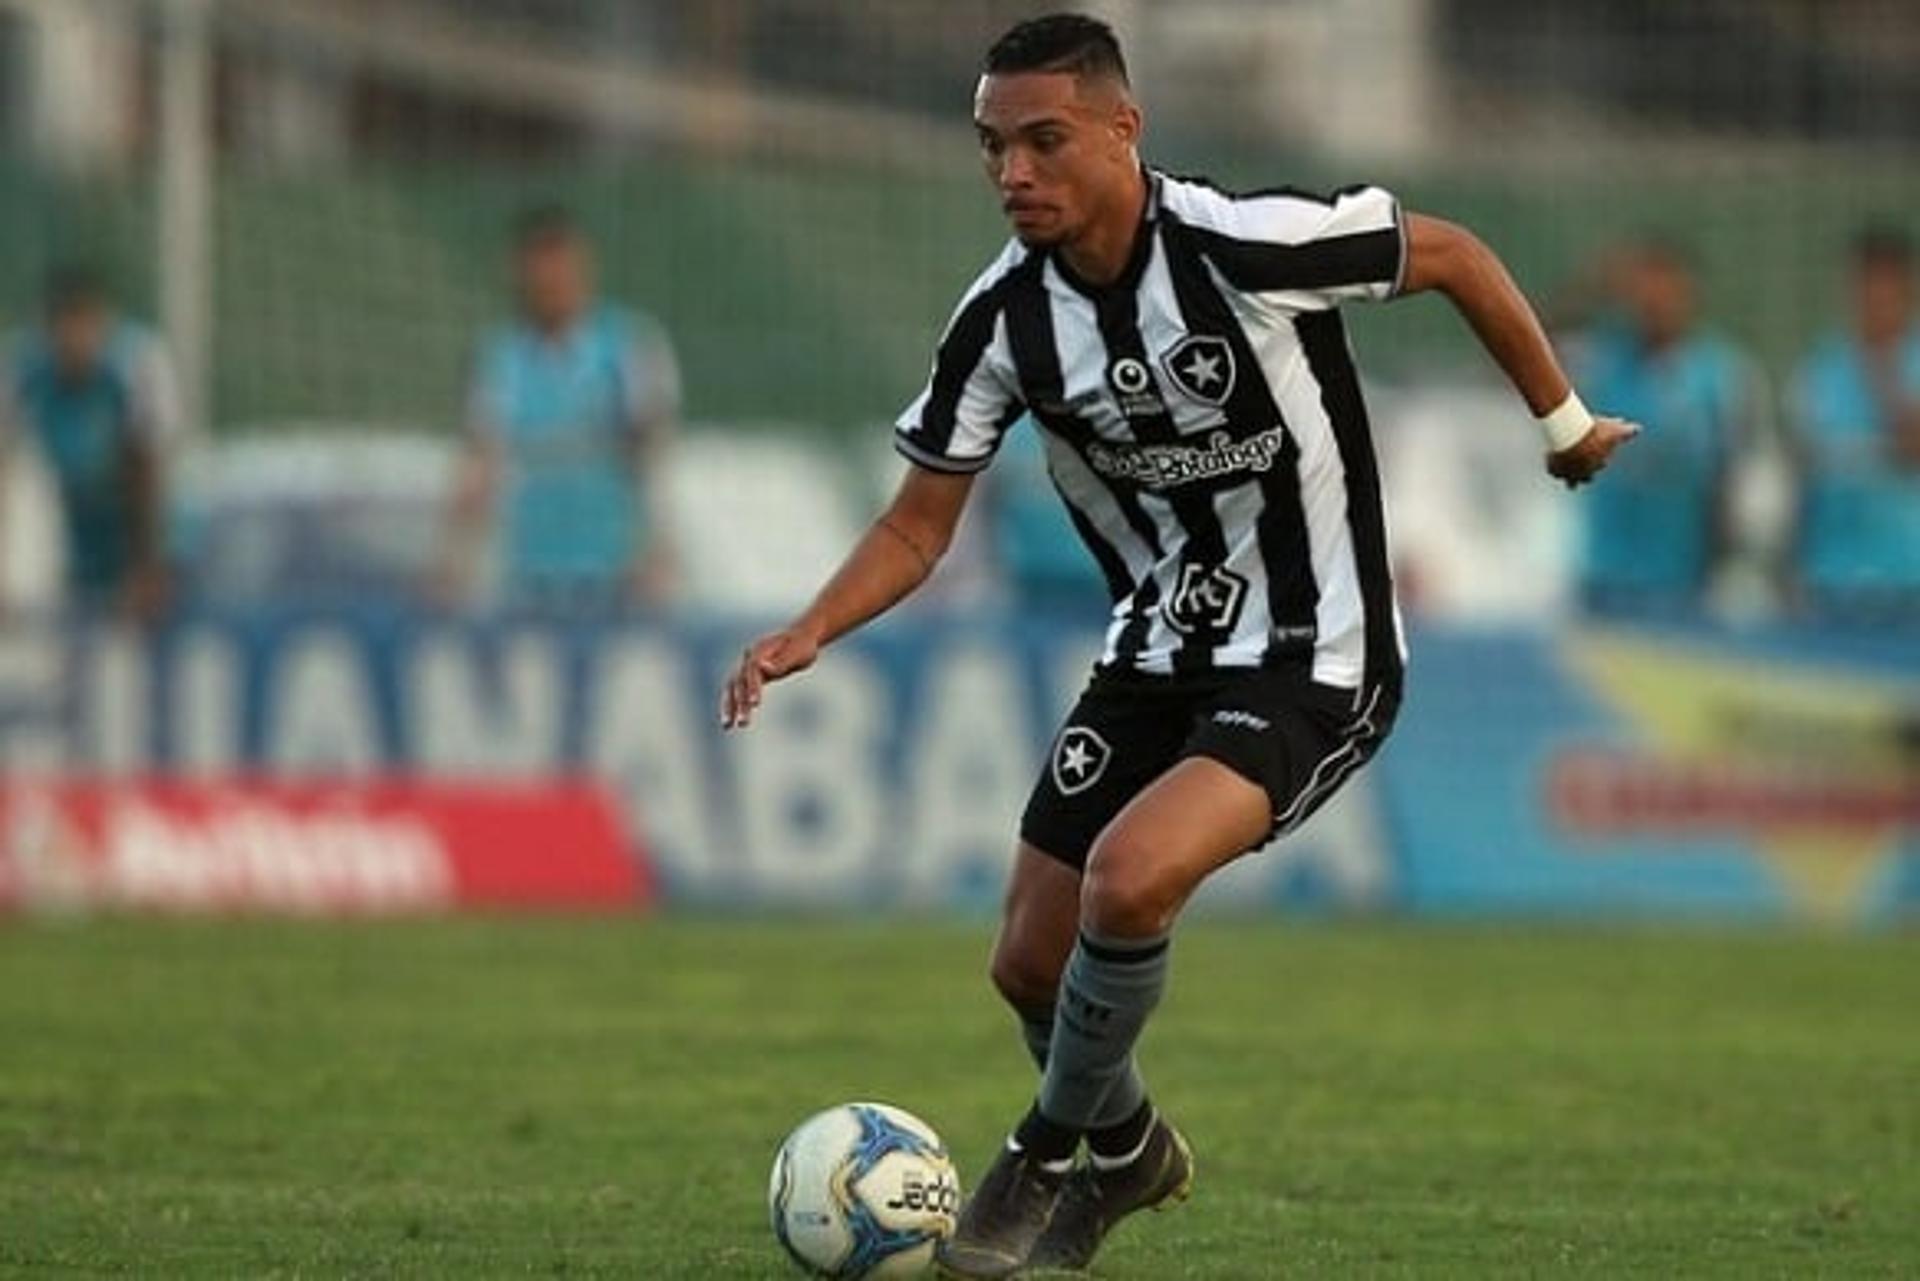 Luiz Fernando - Botafogo